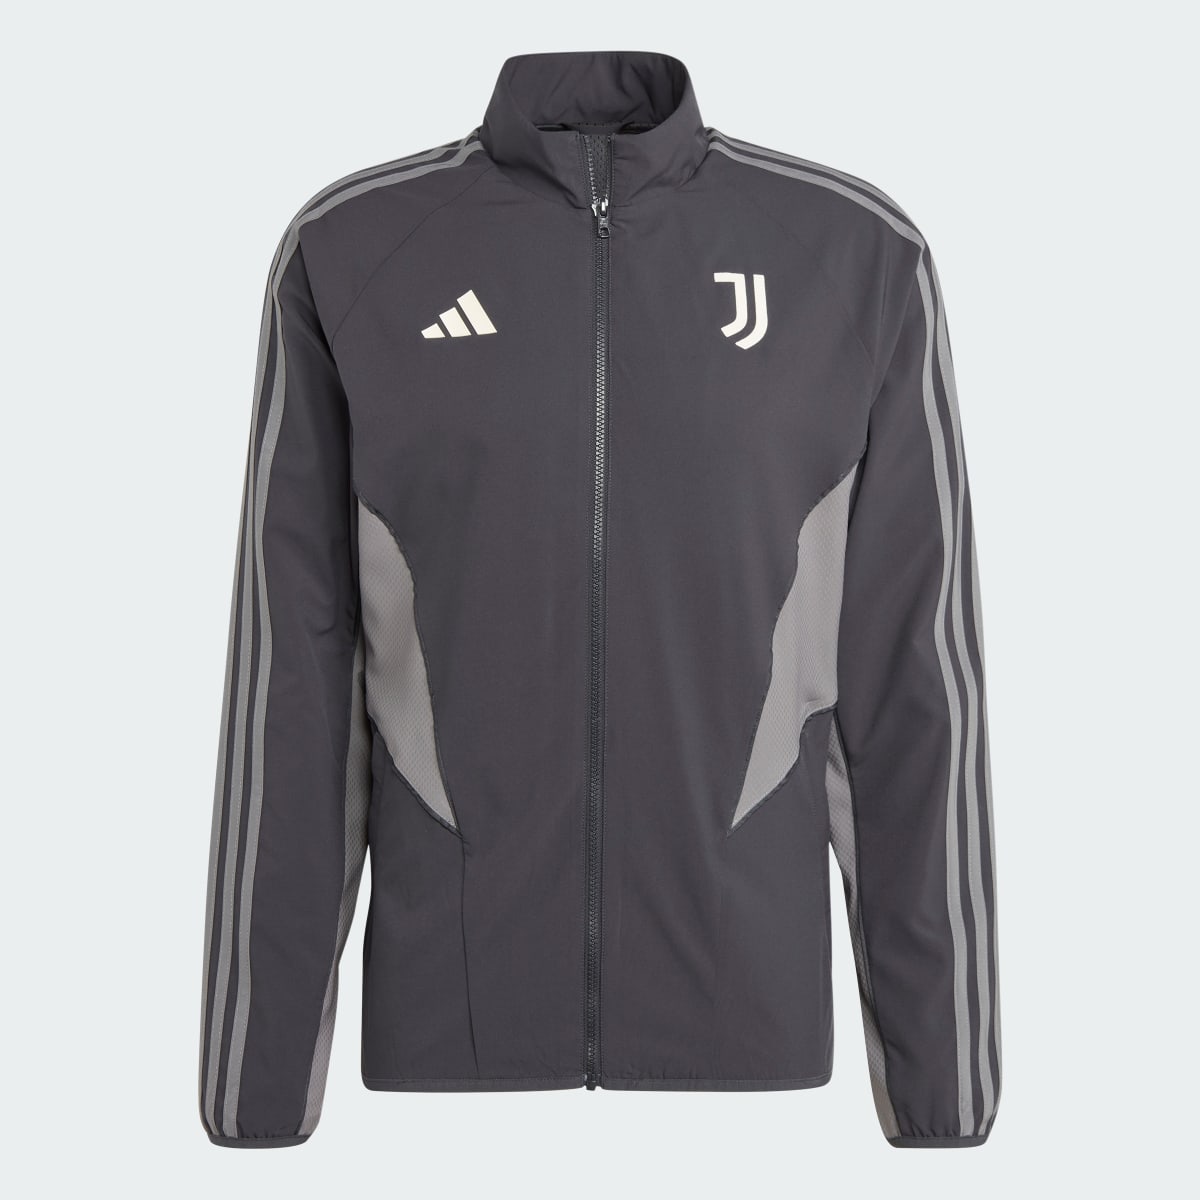 Adidas Juventus Anthem Jacket. 6